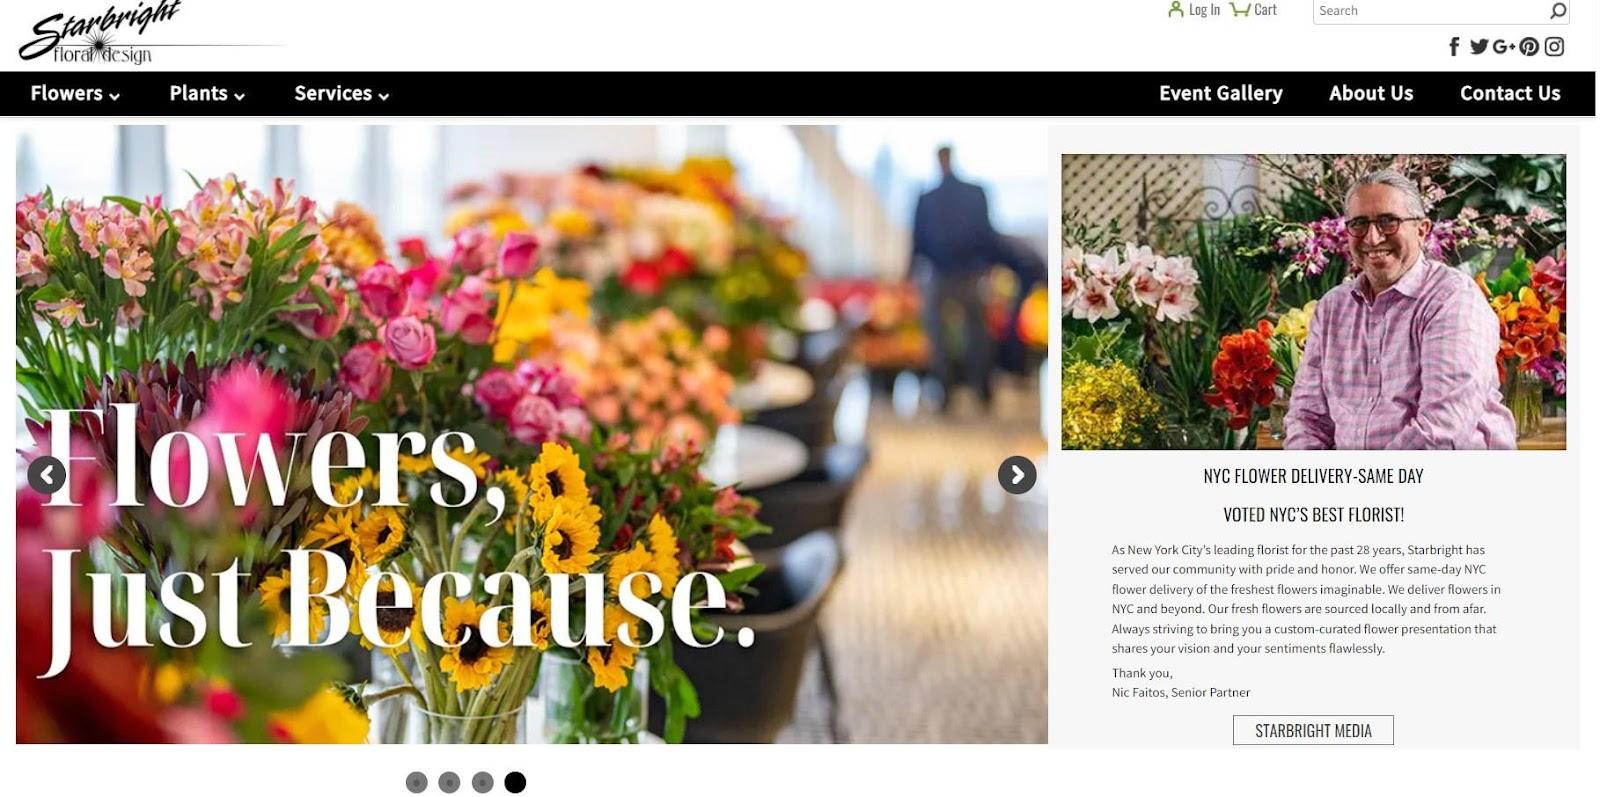 Best florist websites — design example from Starbright Floral Design.